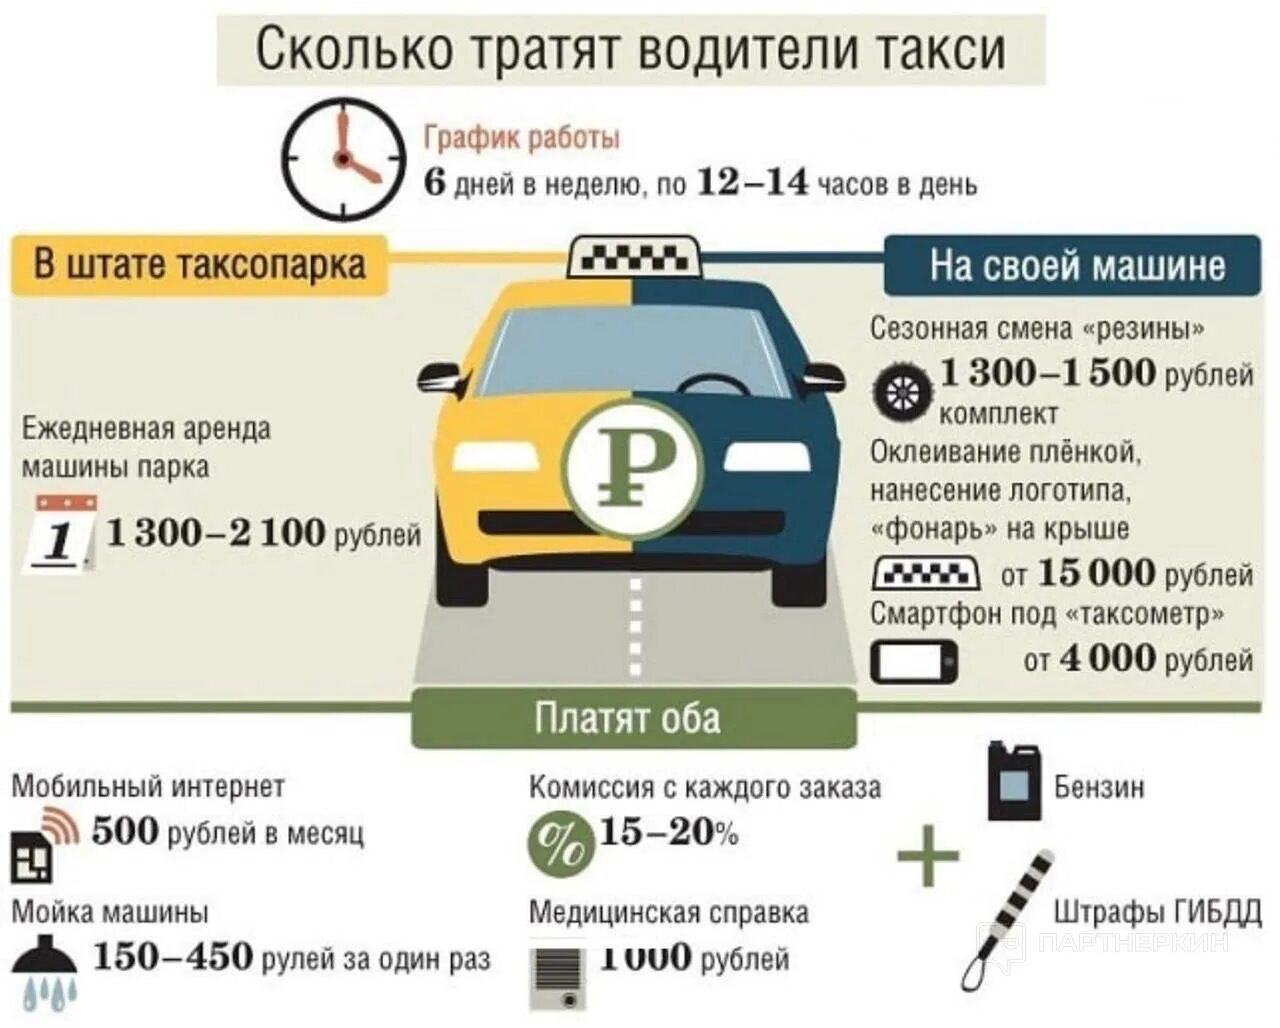 Каким машинам Монжа таксават. Сколько будет стоить такси. Количество таксистов в Москве. Своя машина в такси.